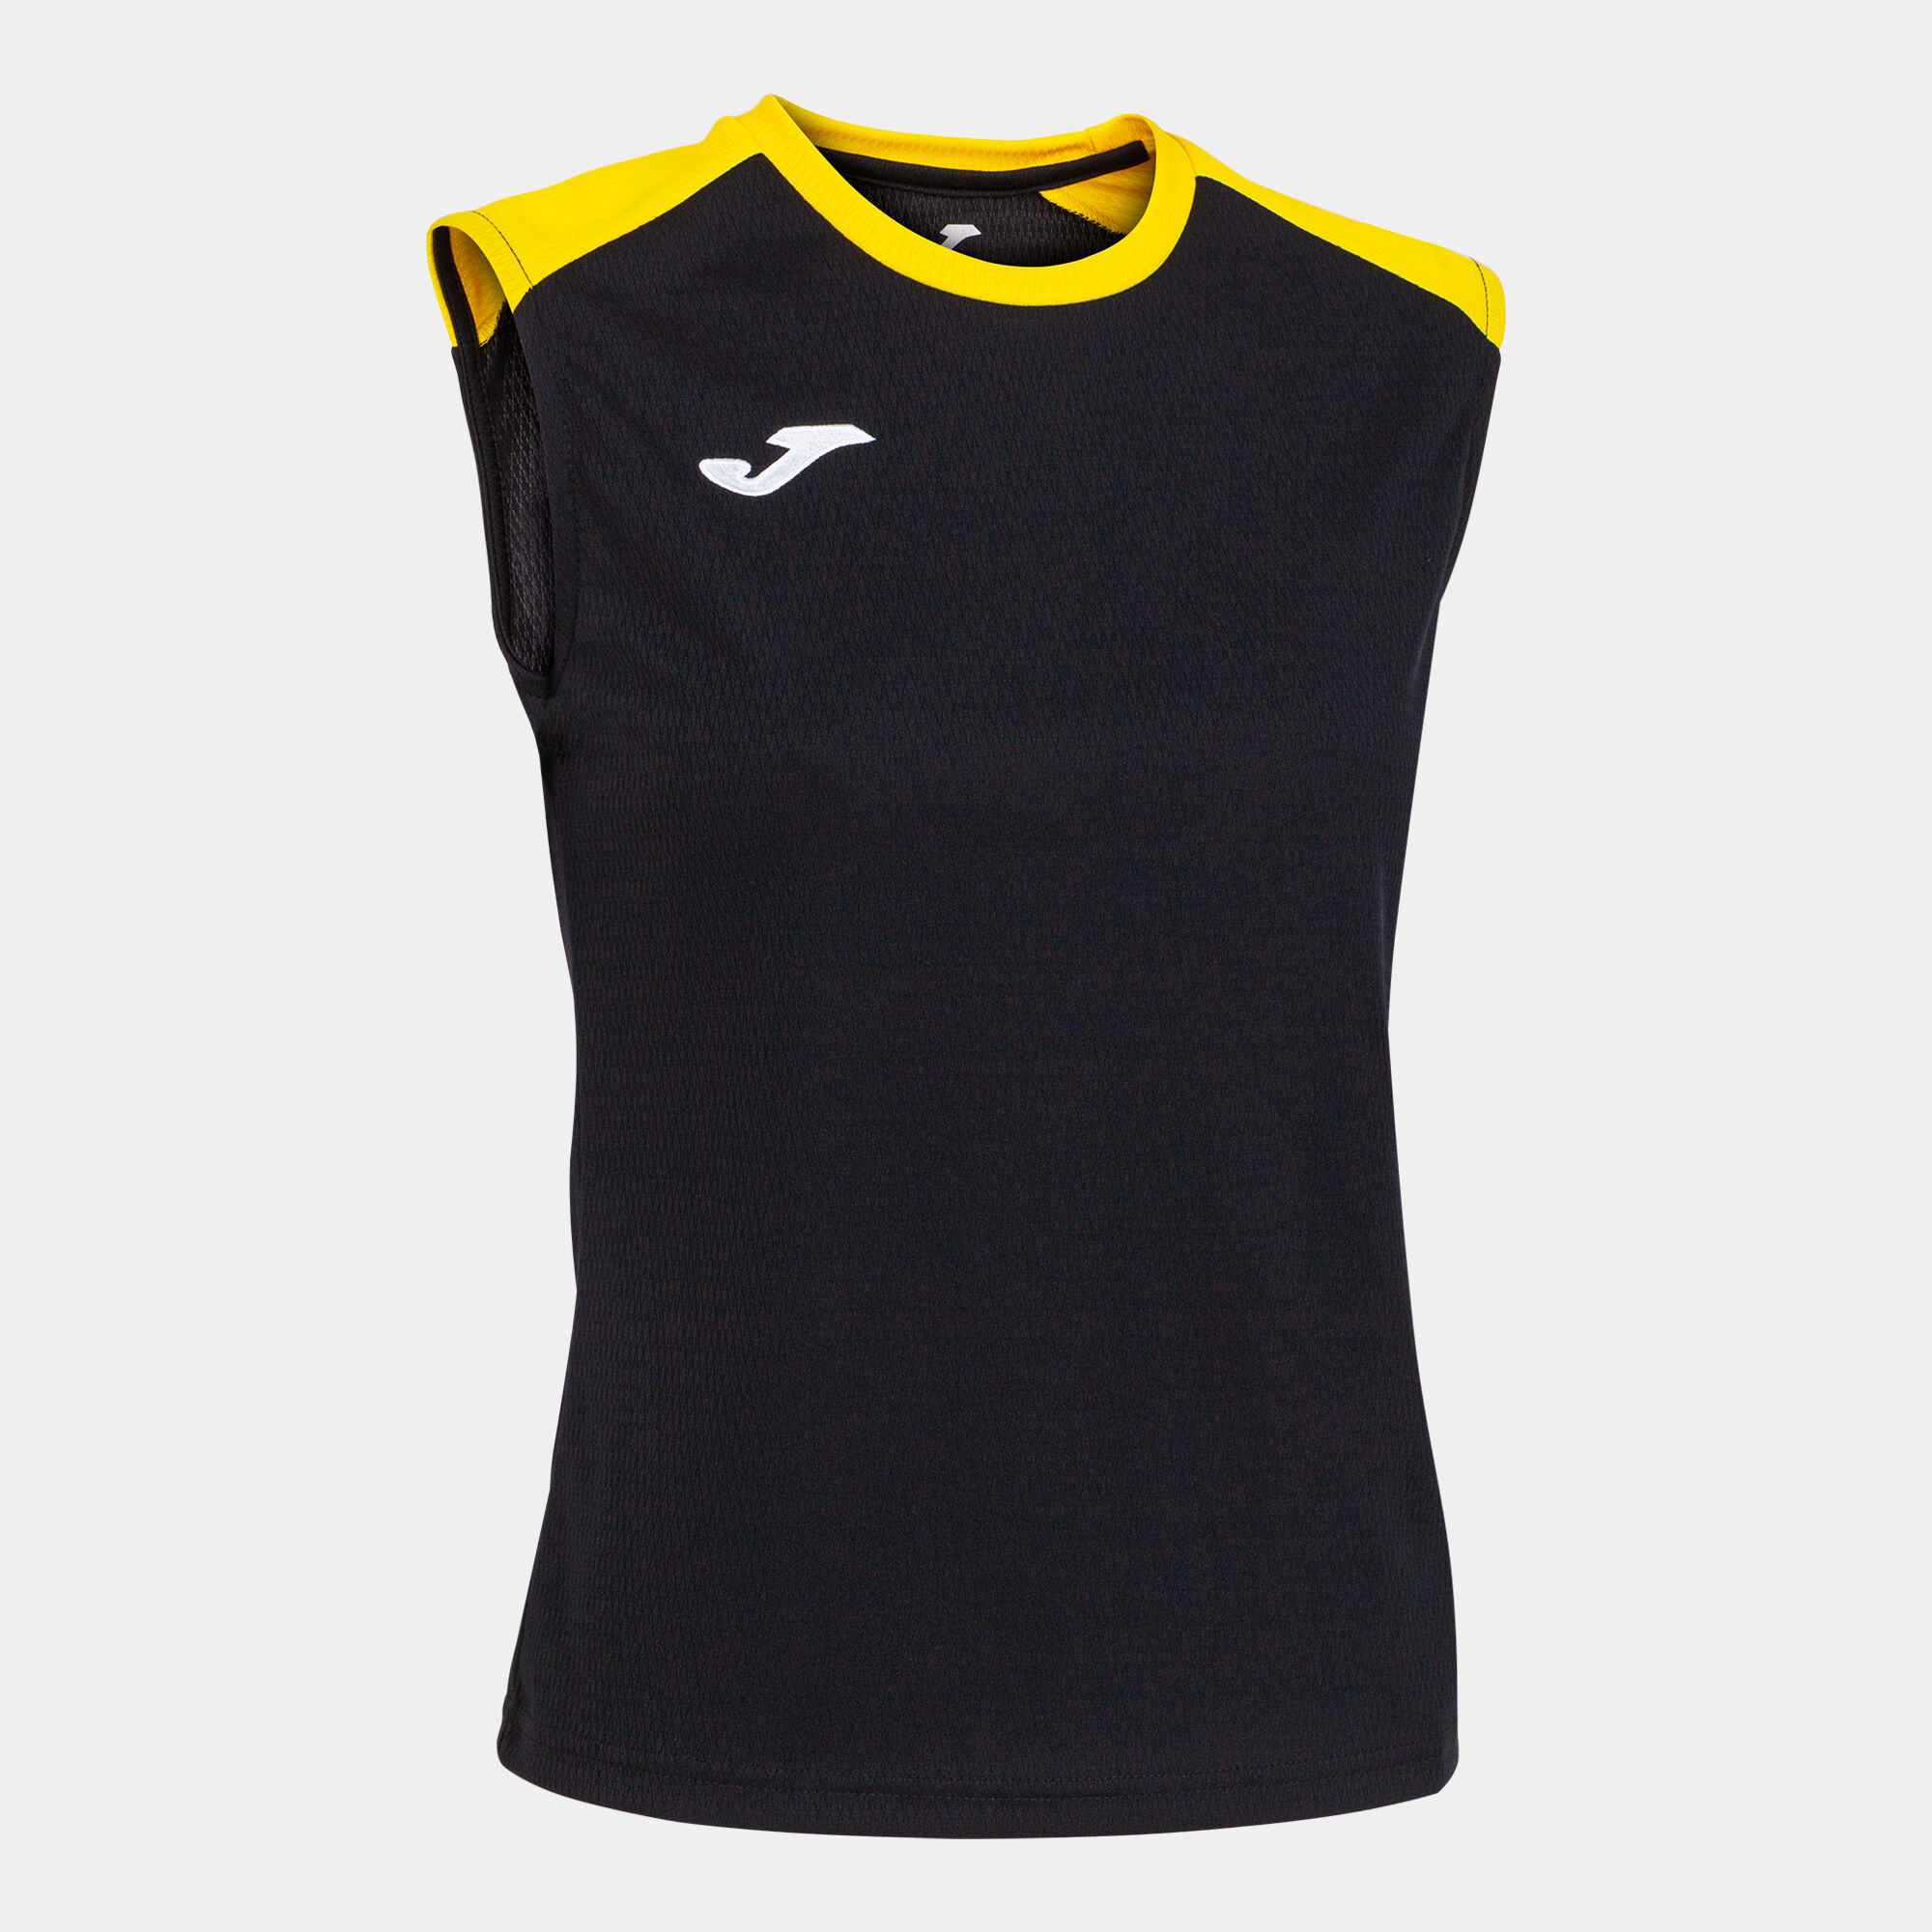 Schulterriemen-shirt frau Eco Championship schwarz gelb